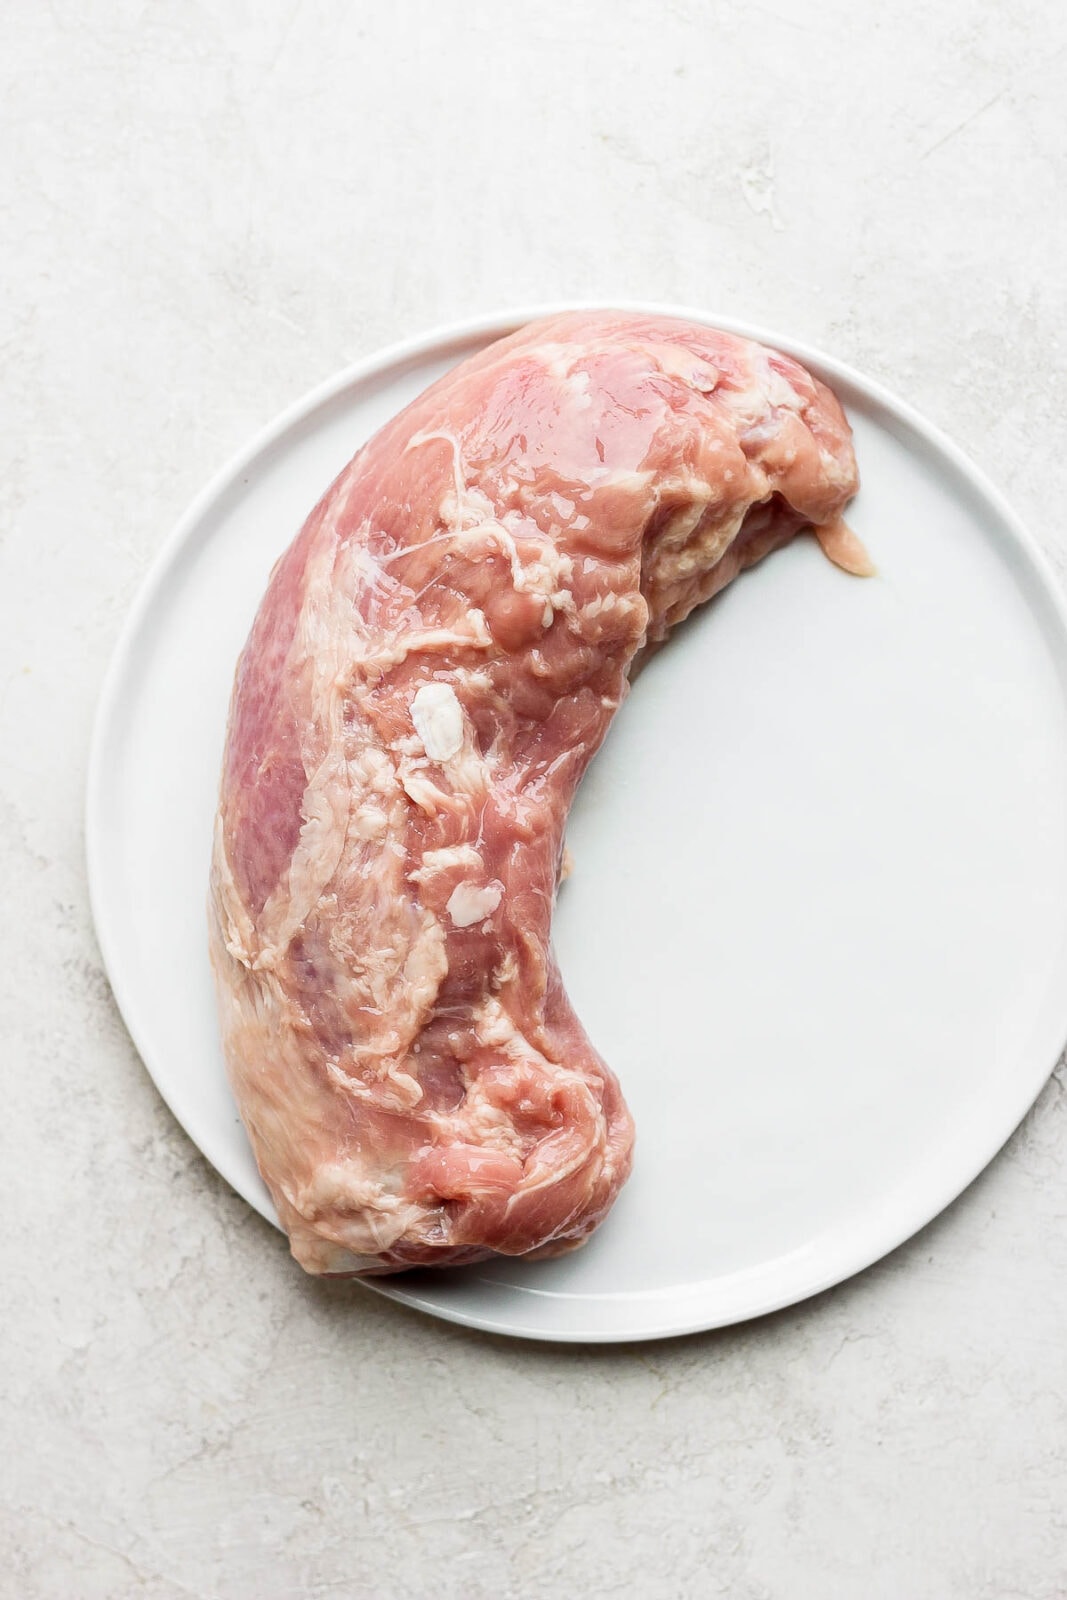 Raw pork tenderloin on a plate. 